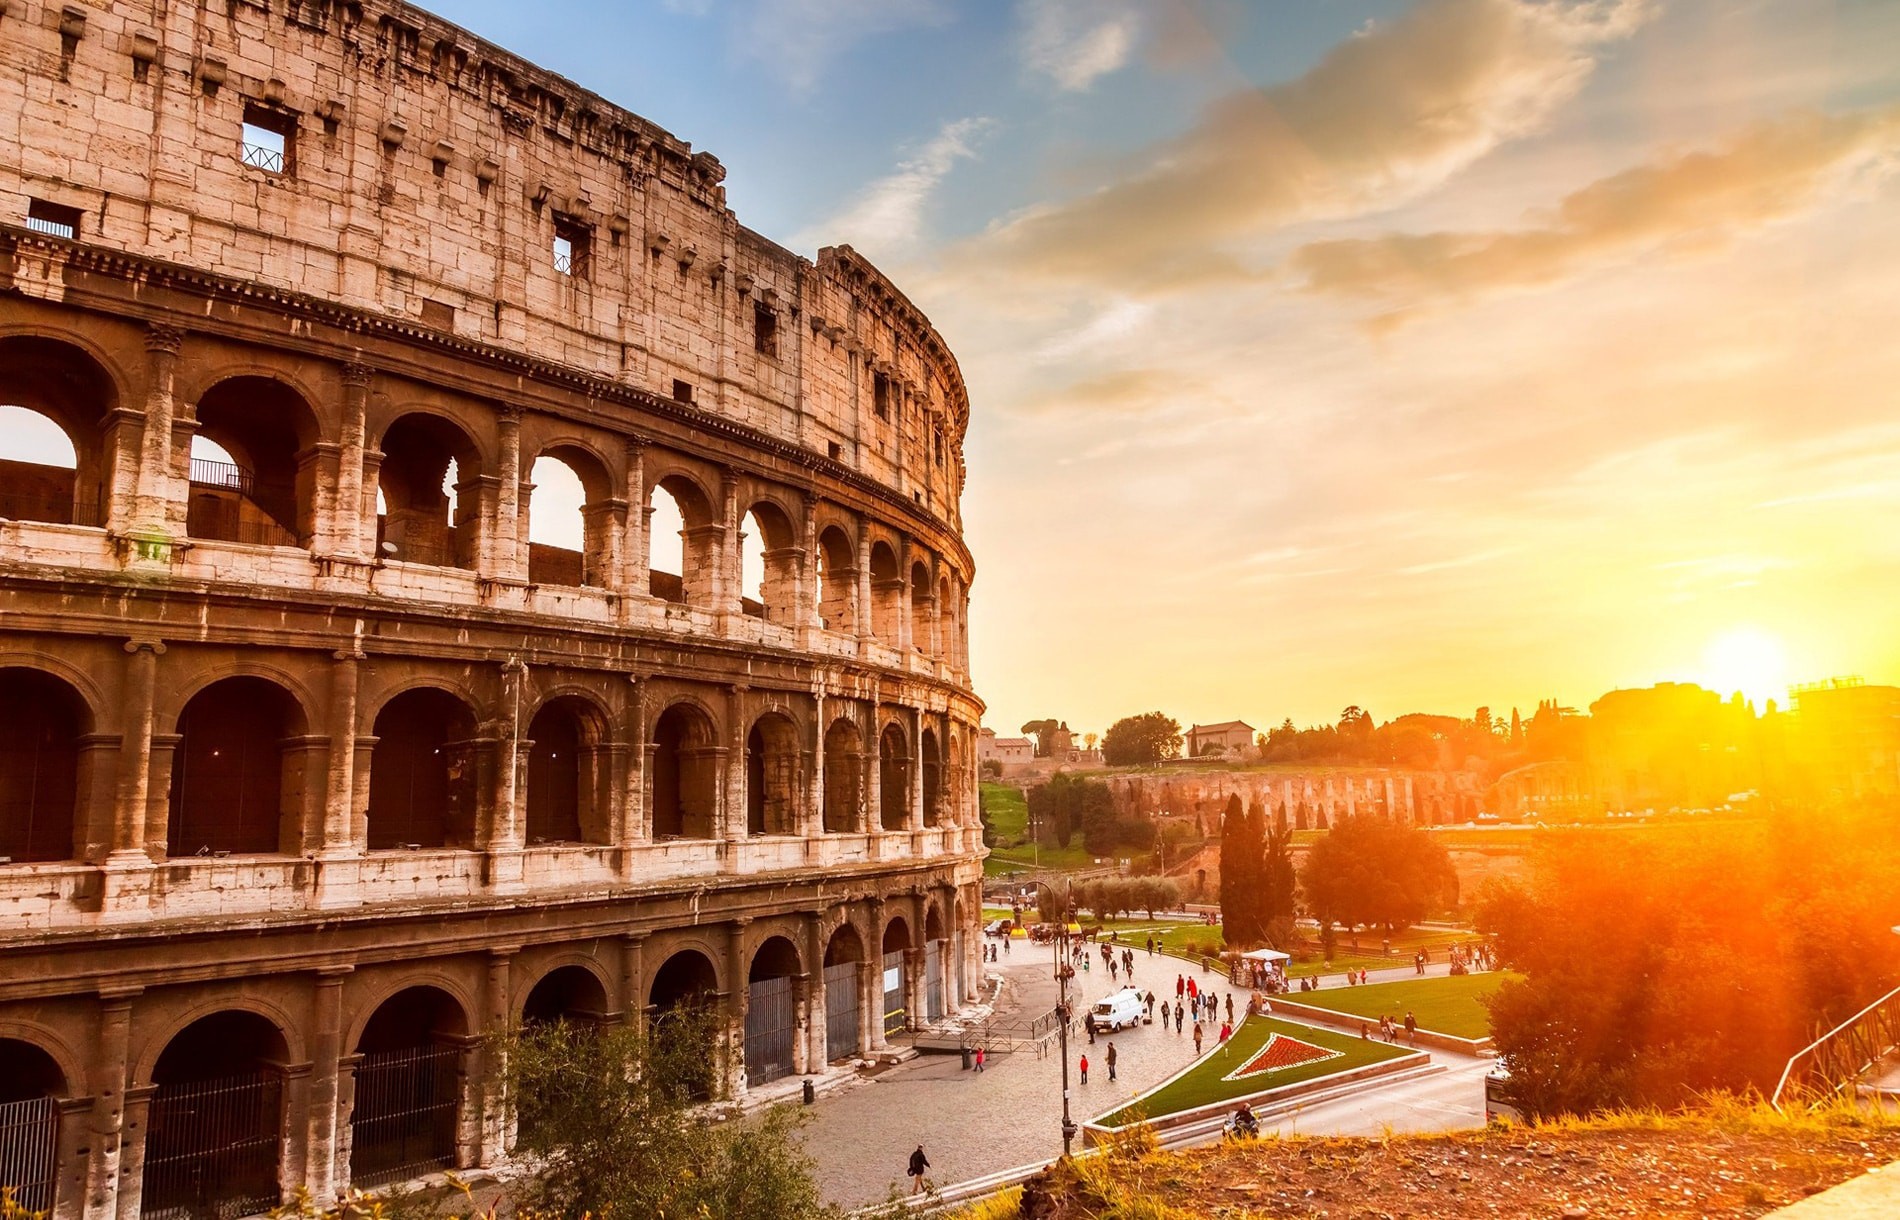 Thành Rome là trái tim của Ý và di sản văn hóa nổi tiếng khắp Thế giới